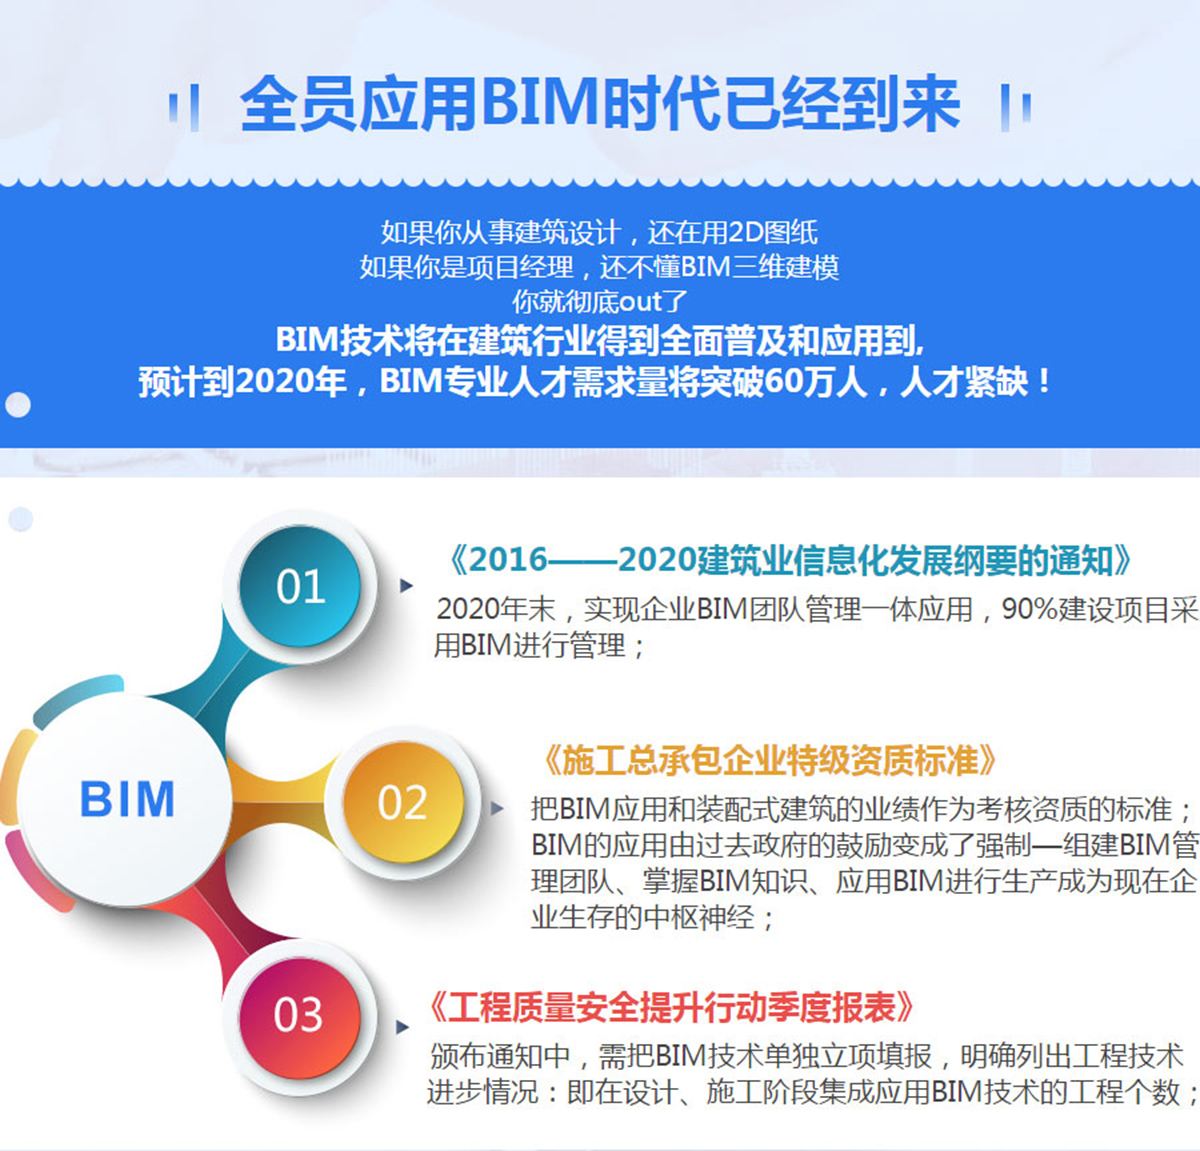 关于天津bim工程师培训服务的信息  第1张